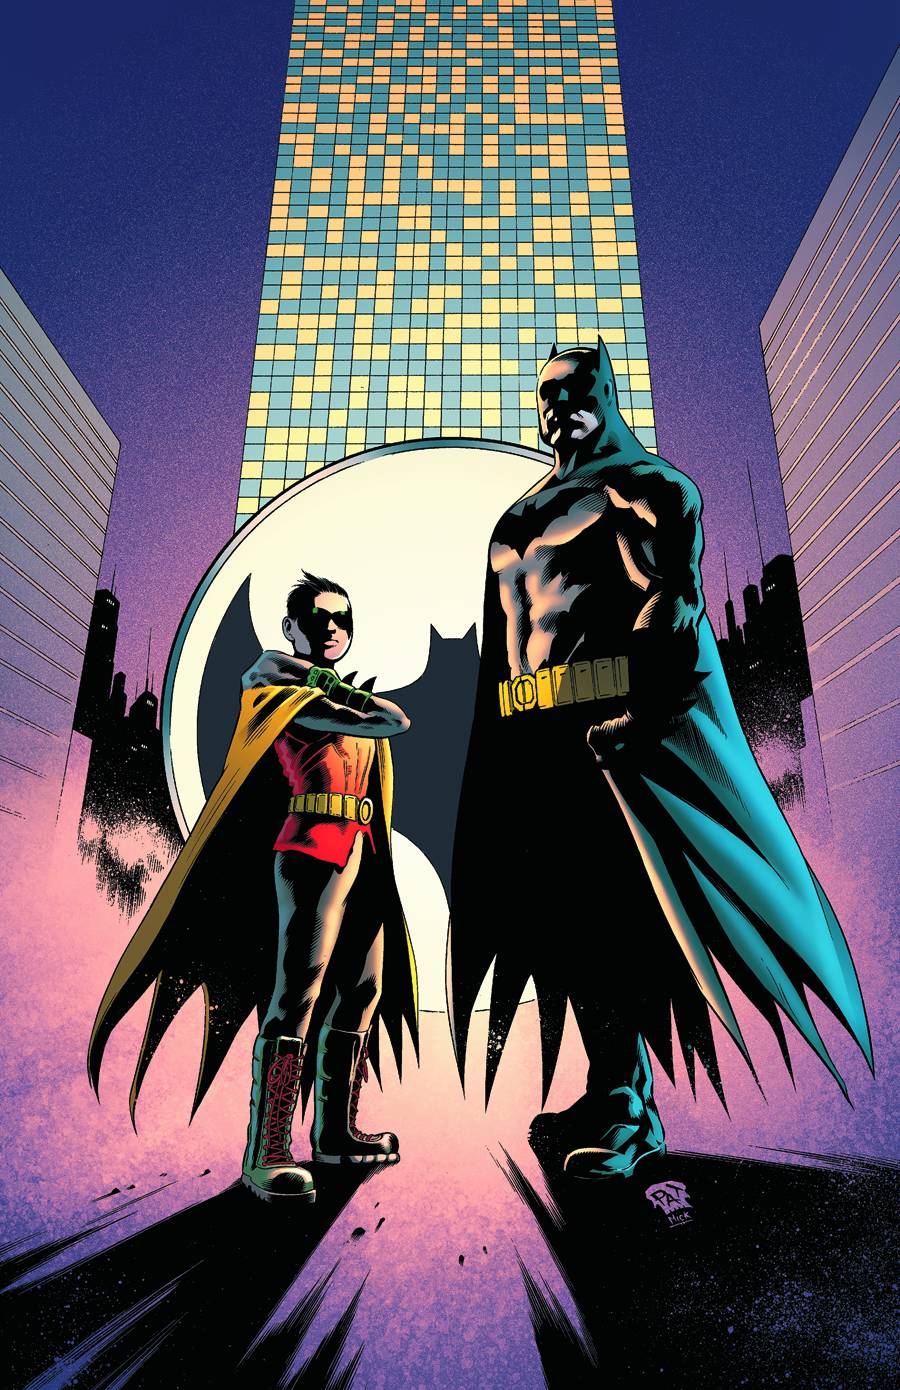 Batman And Robin [1949]